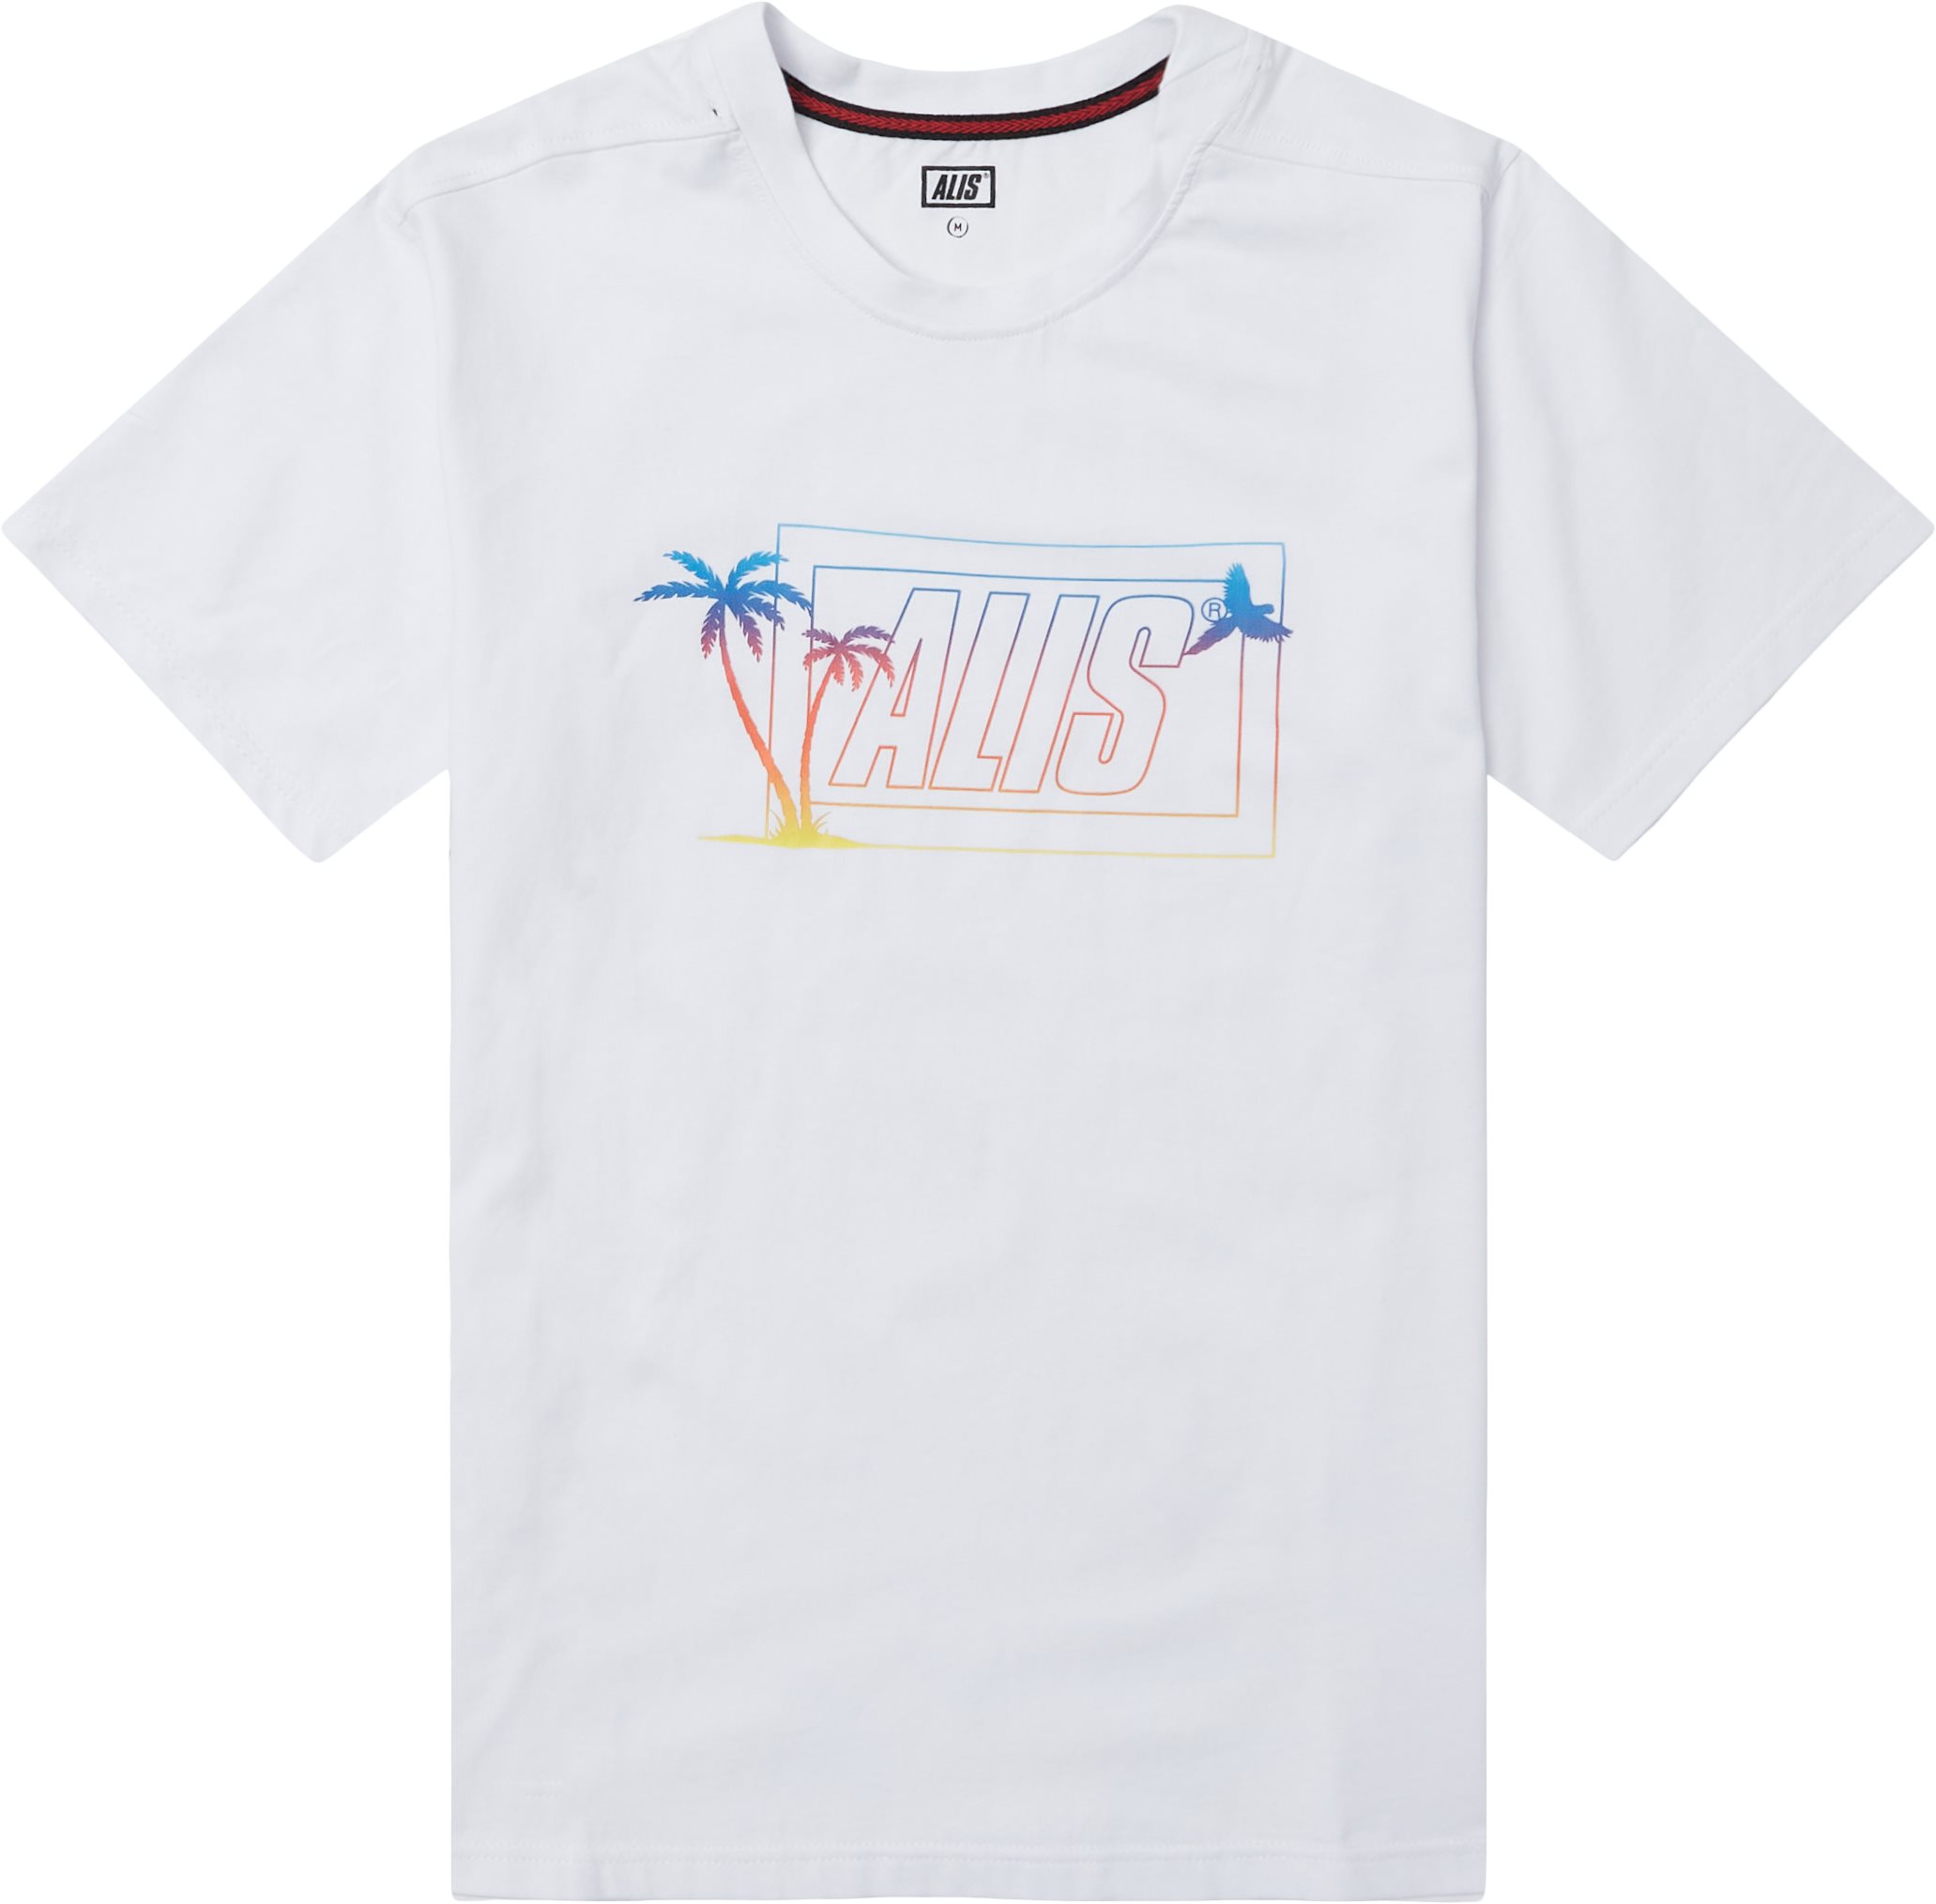 Sunset Box Logo Tee - T-shirts - Regular fit - White